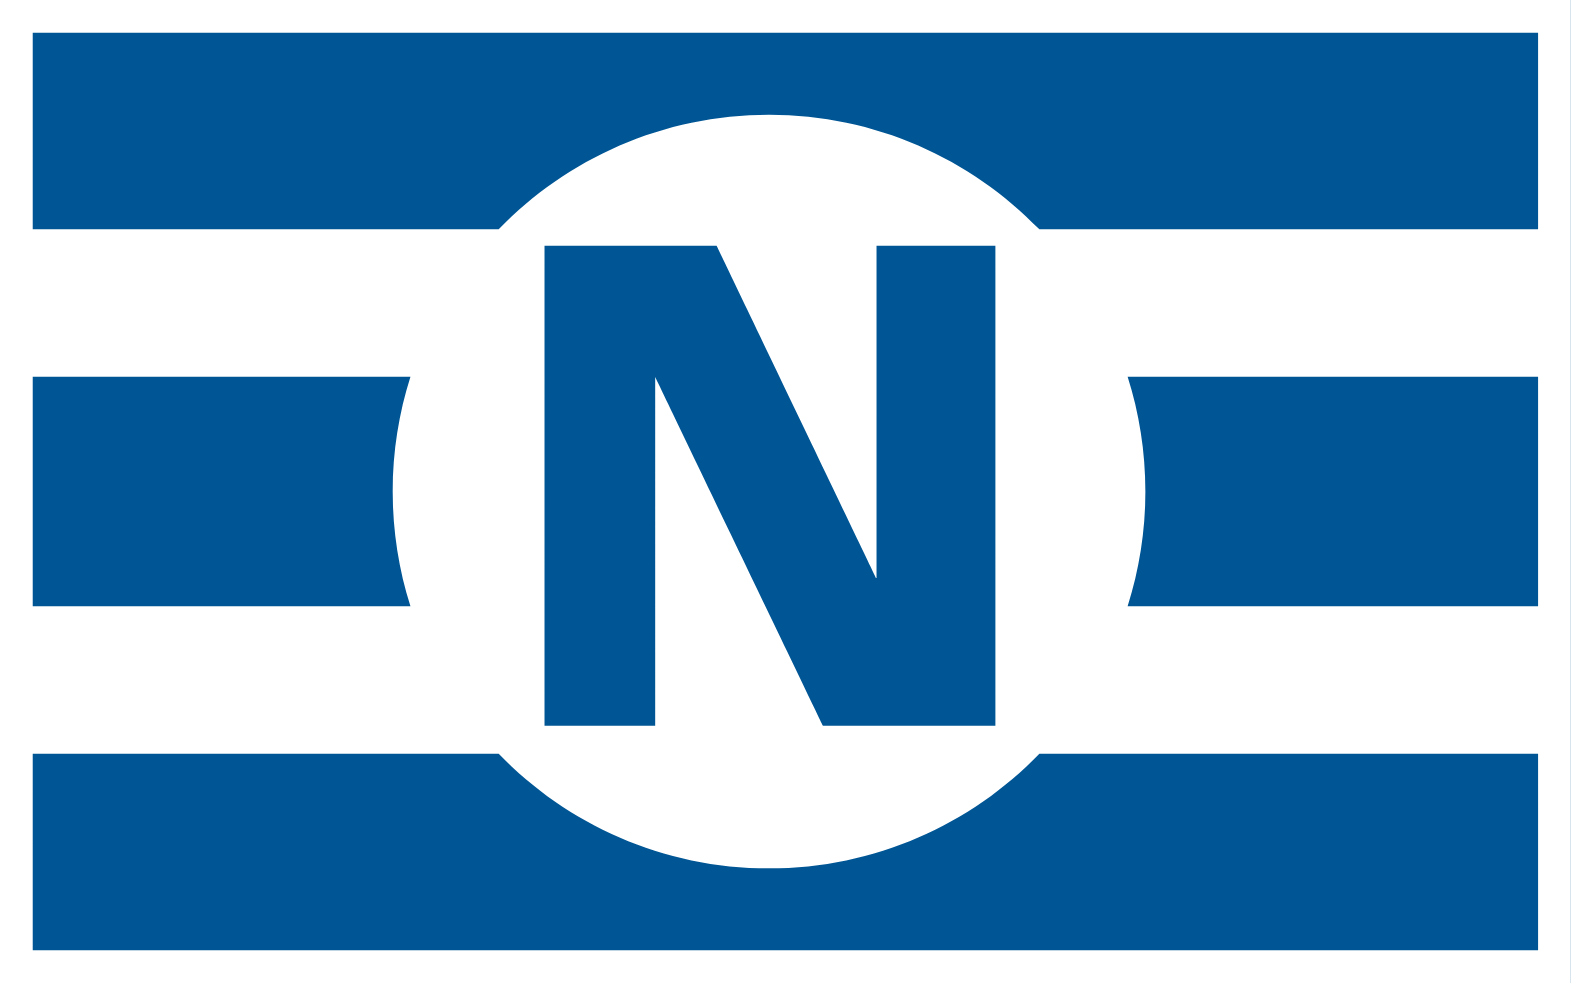 Navios Maritime Partners Logo (transparentes PNG)